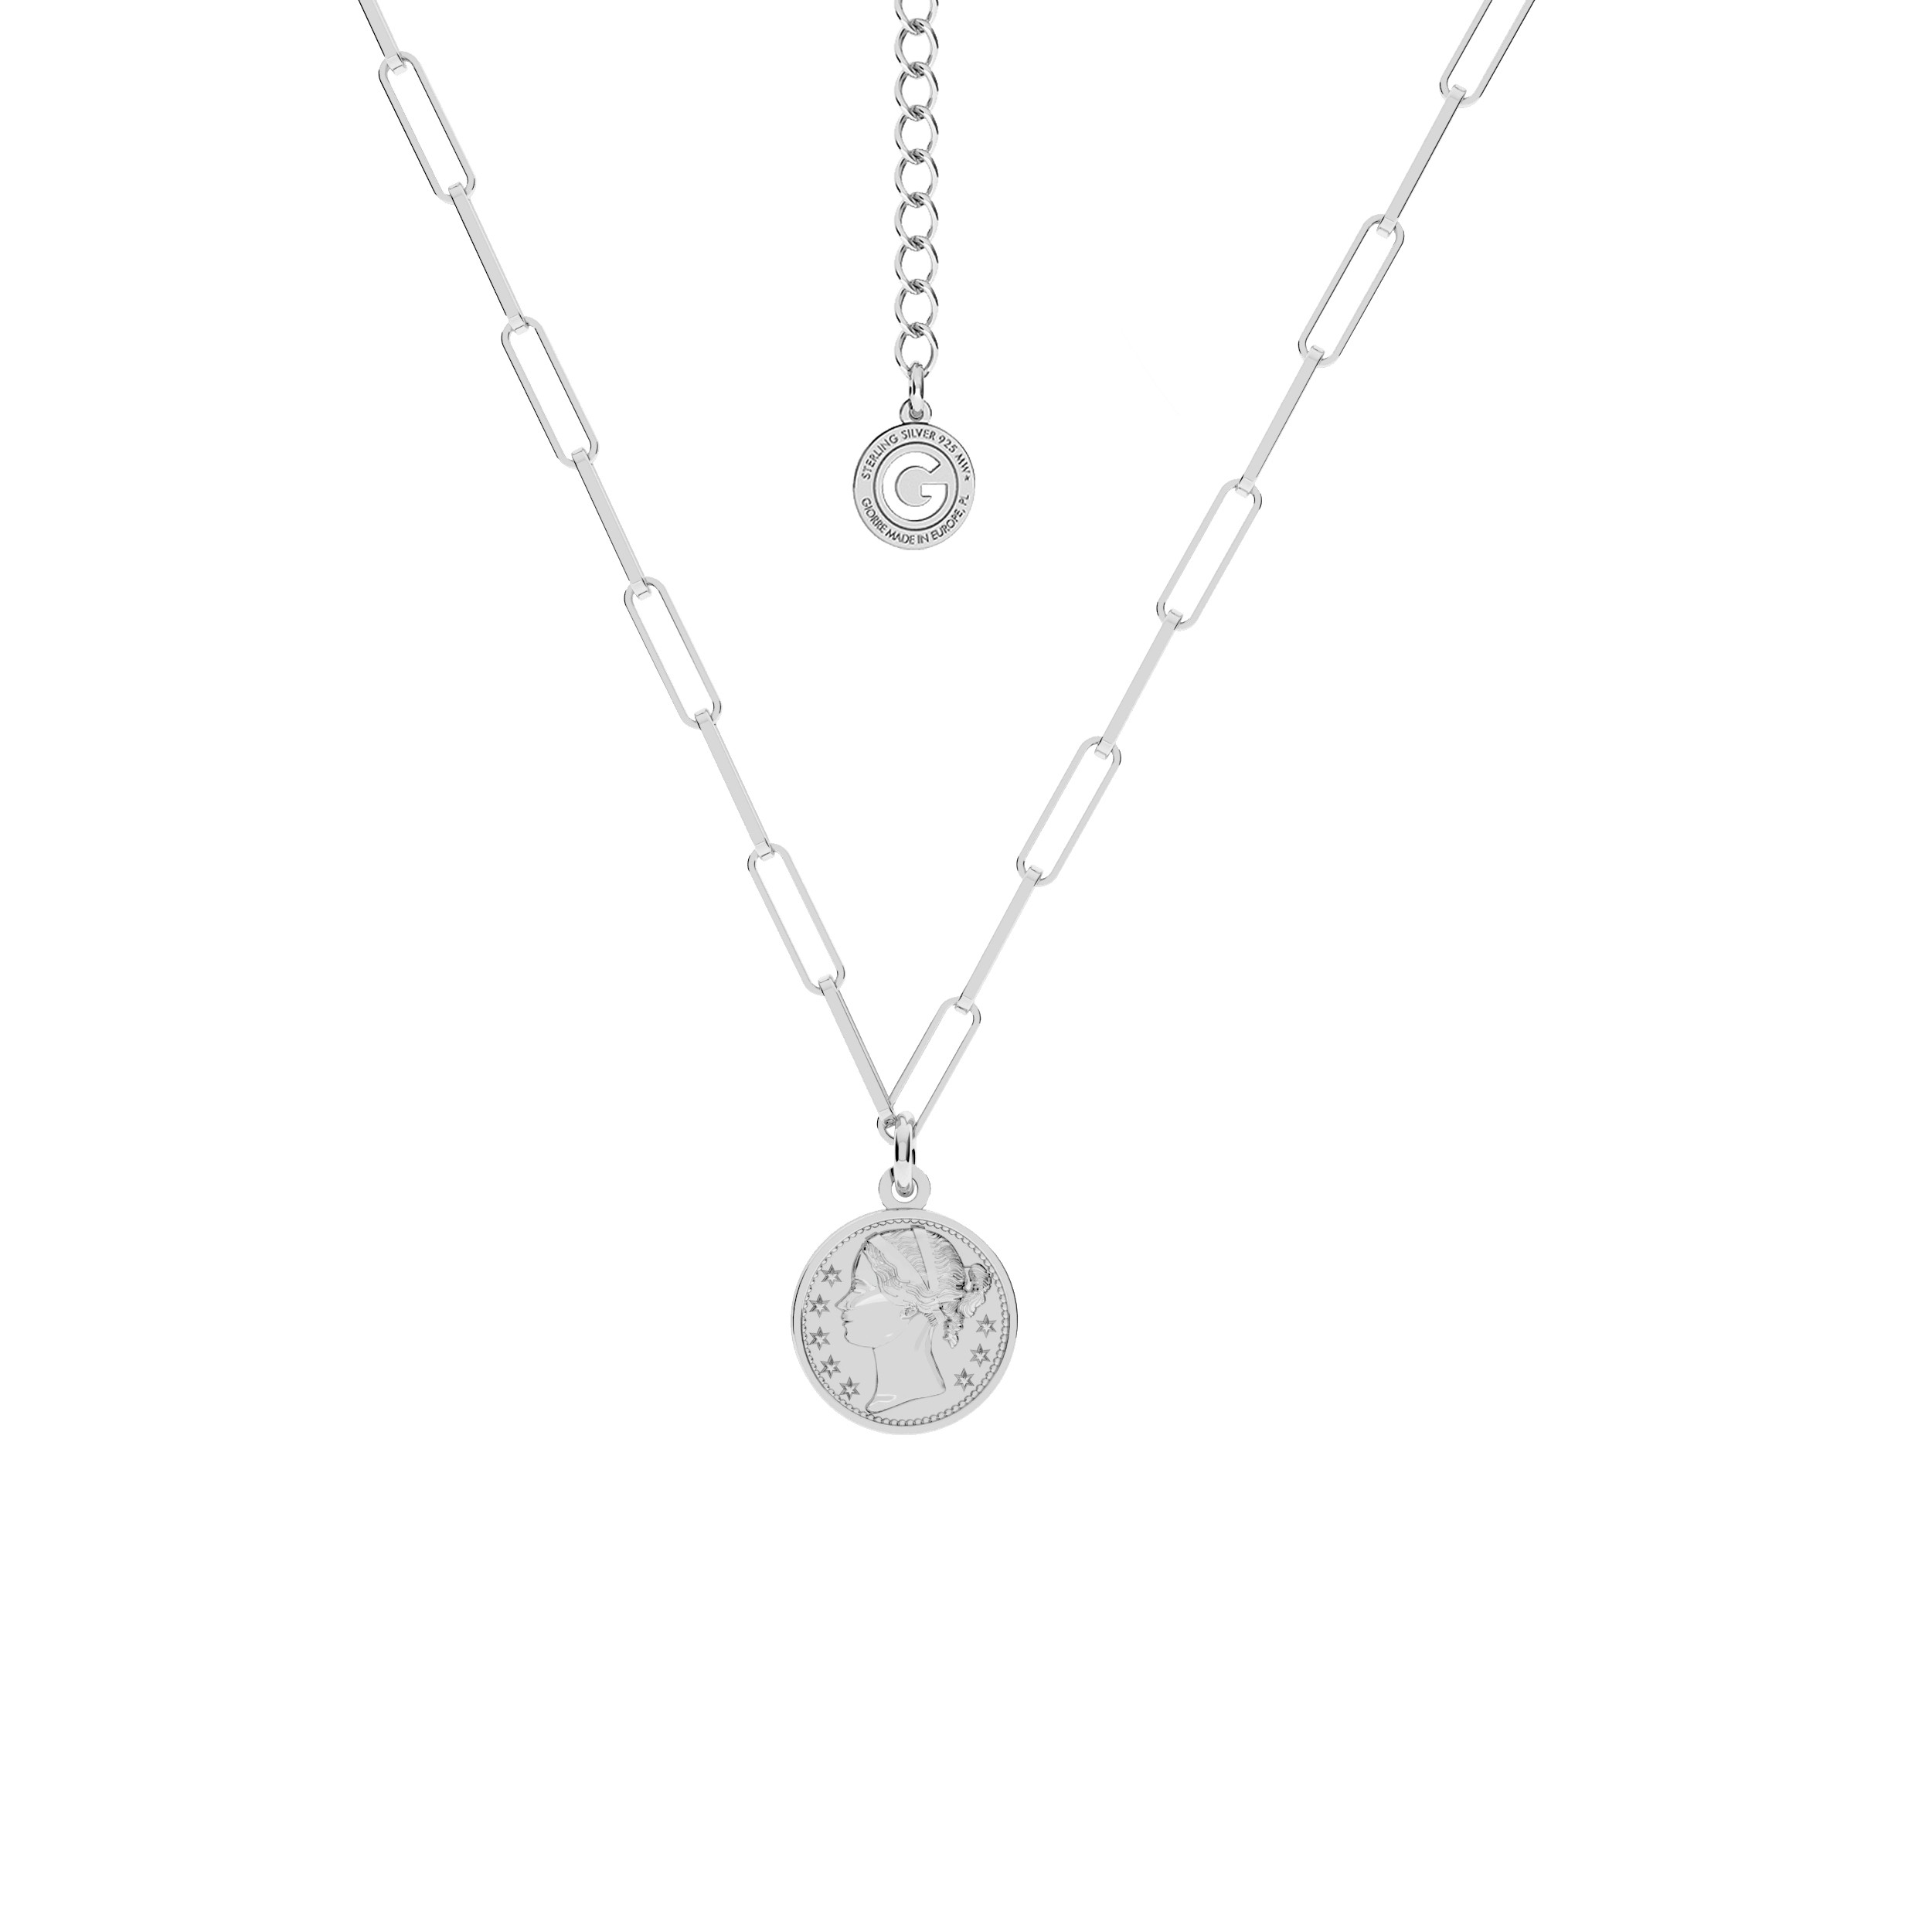 Coin necklace silver 925